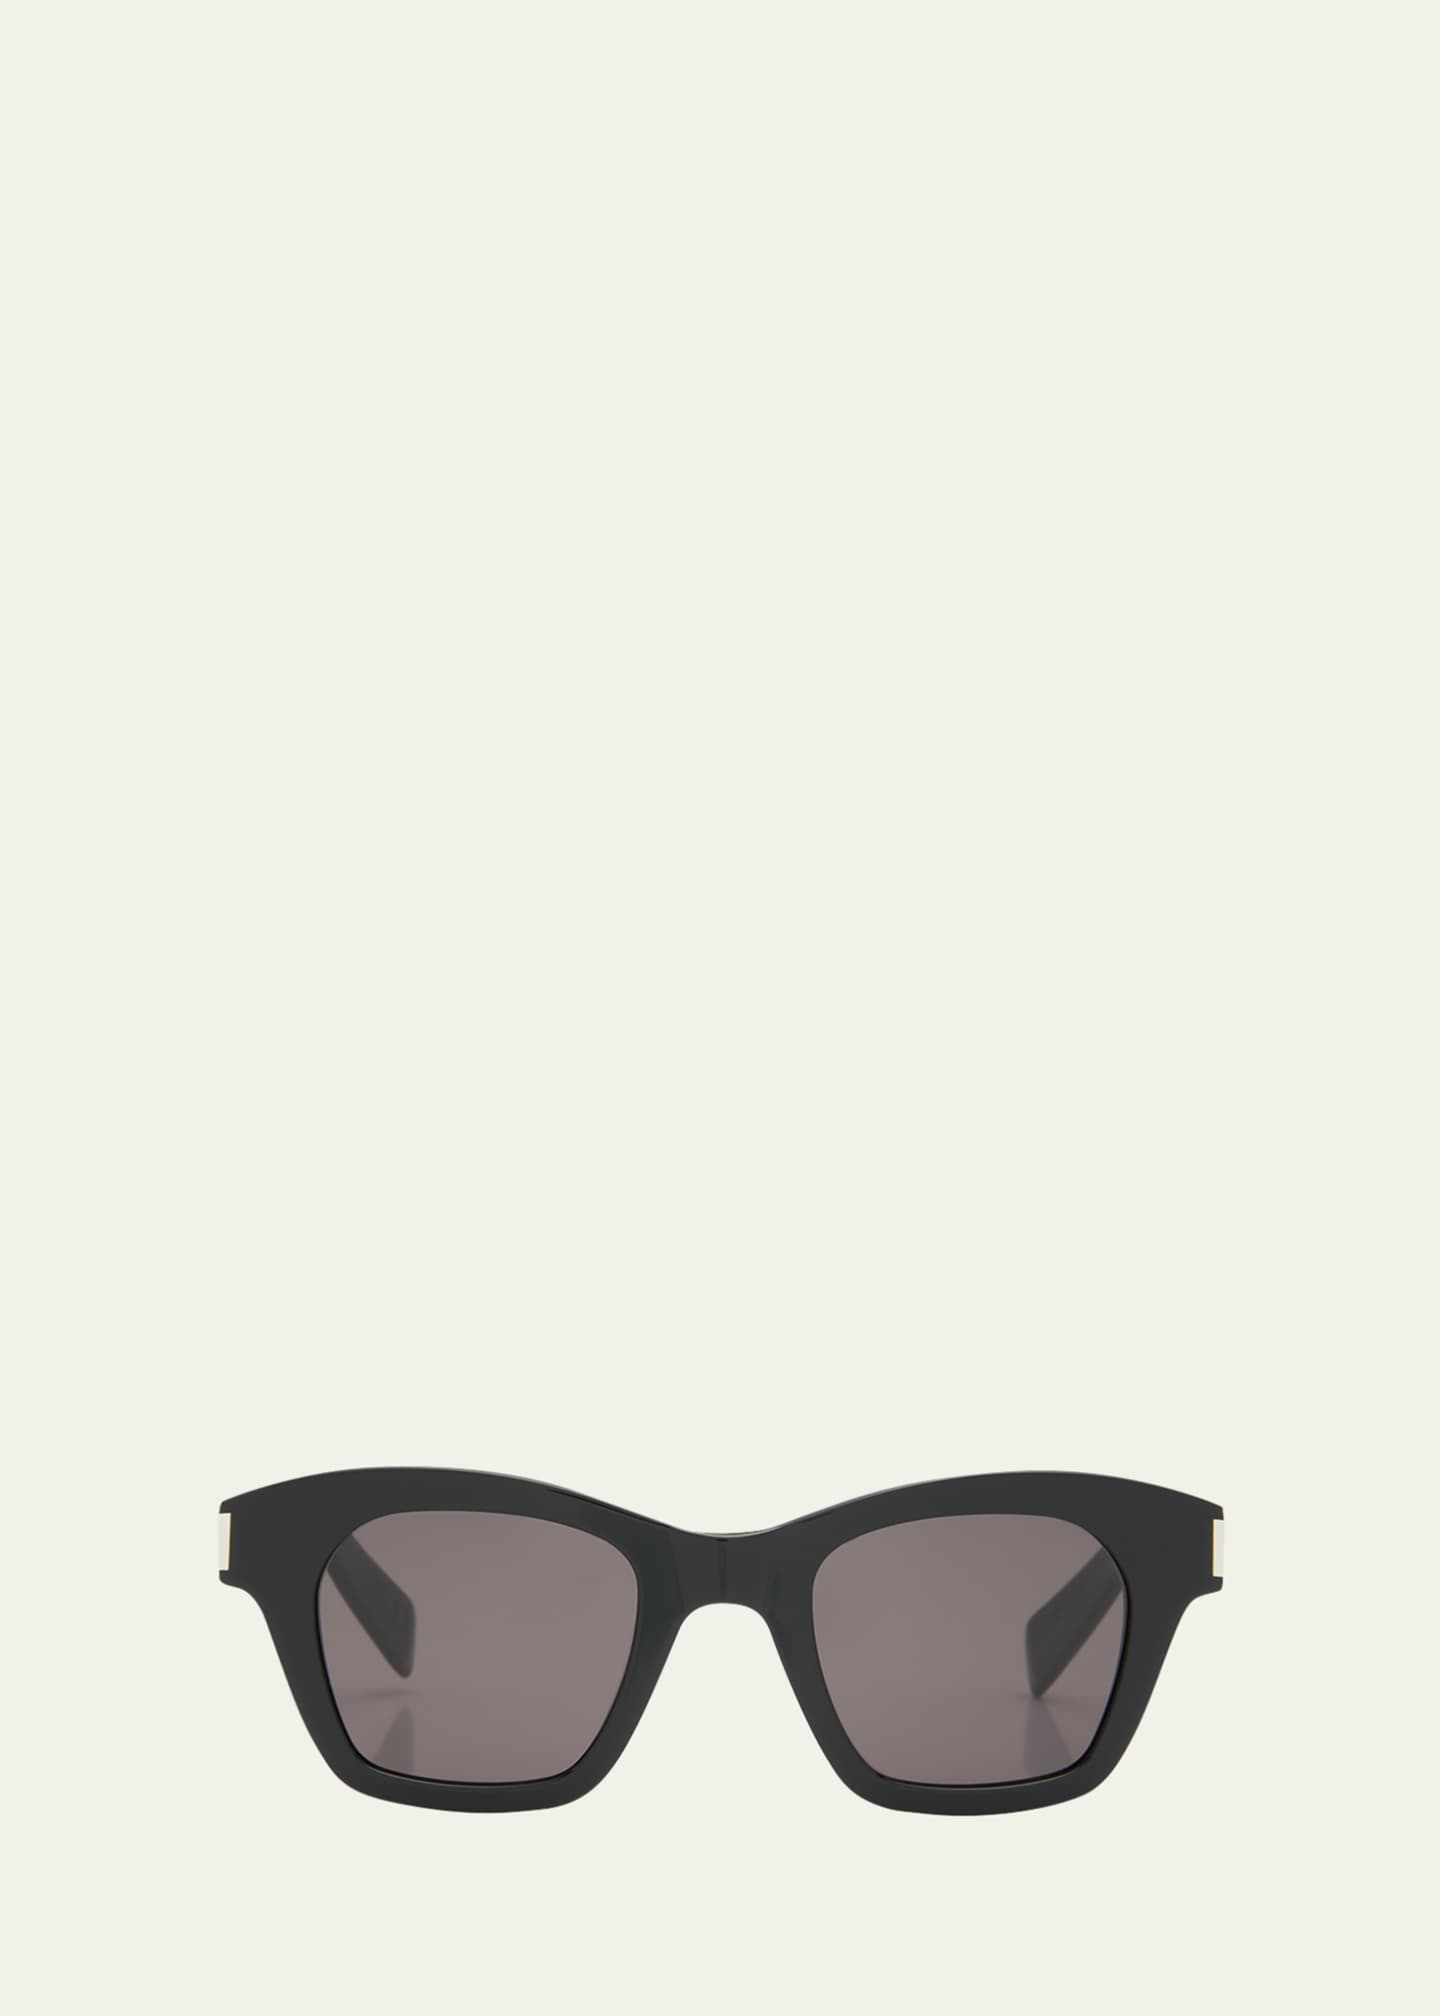 Saint Laurent Men's New Wave Square-Frame Sunglasses